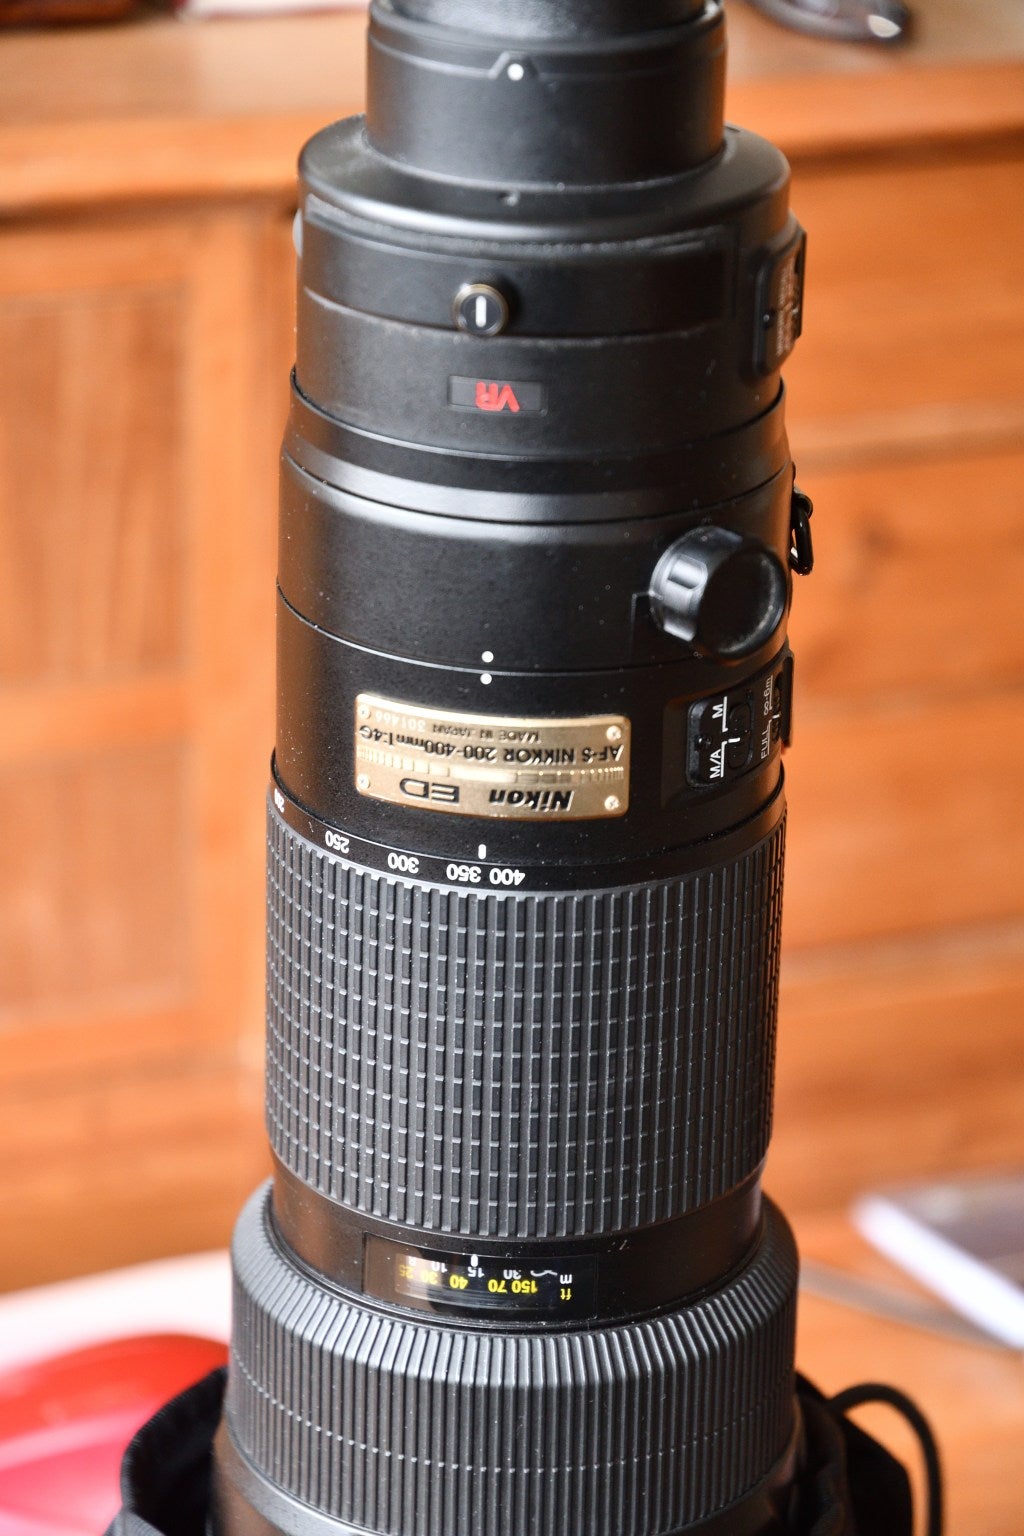 Zoom, Nikon, 200 - 400mm F4 VR